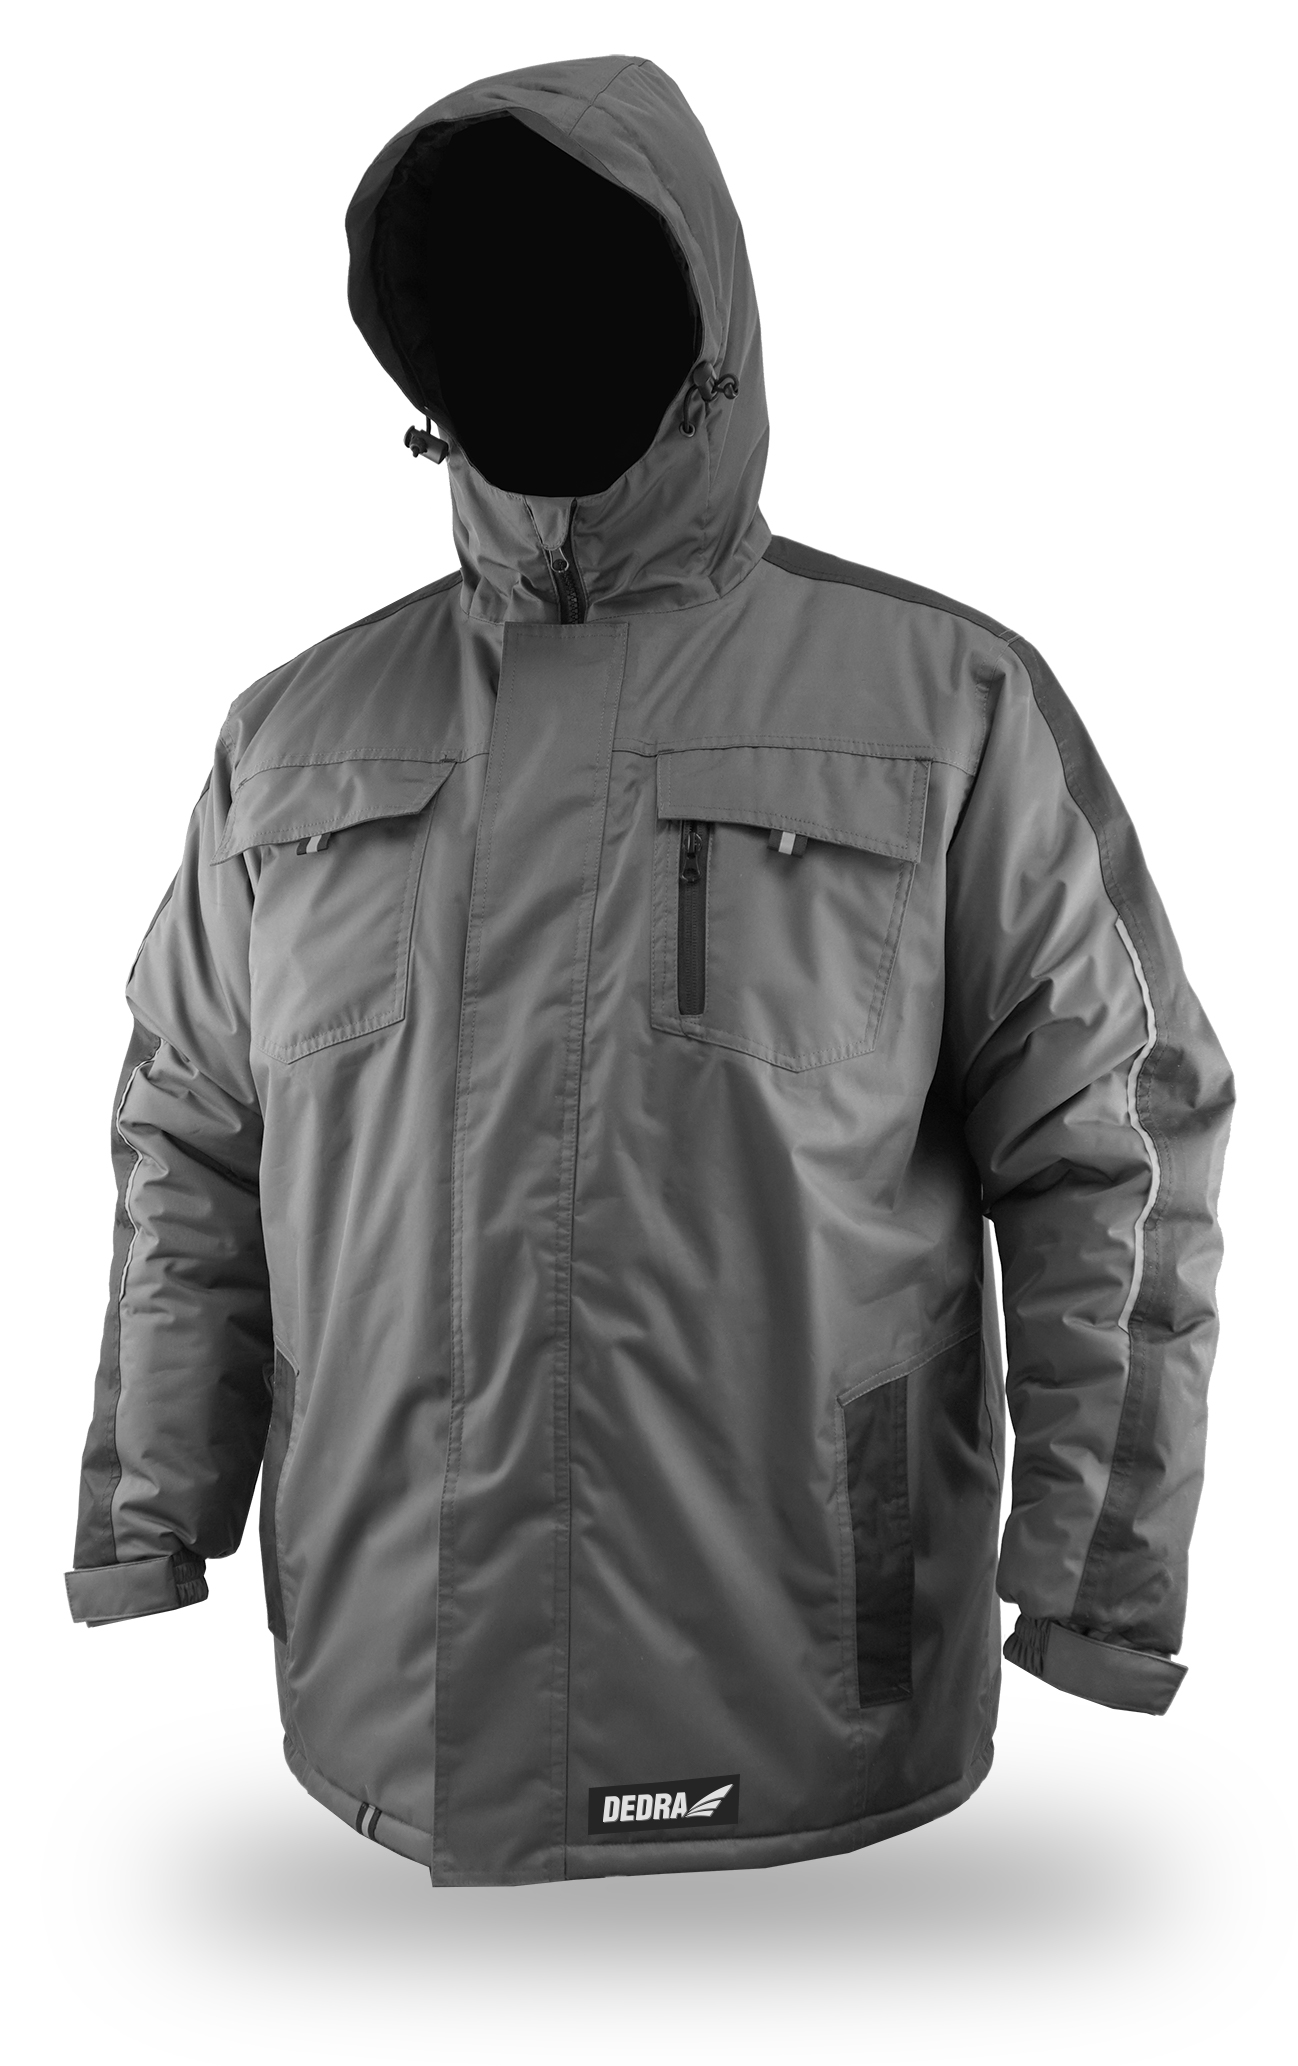 Zateplená zimní bunda s kapucí, velikost XL DEDRA BH71K2-XL + Dárek, servis bez starostí v hodnotě 300Kč